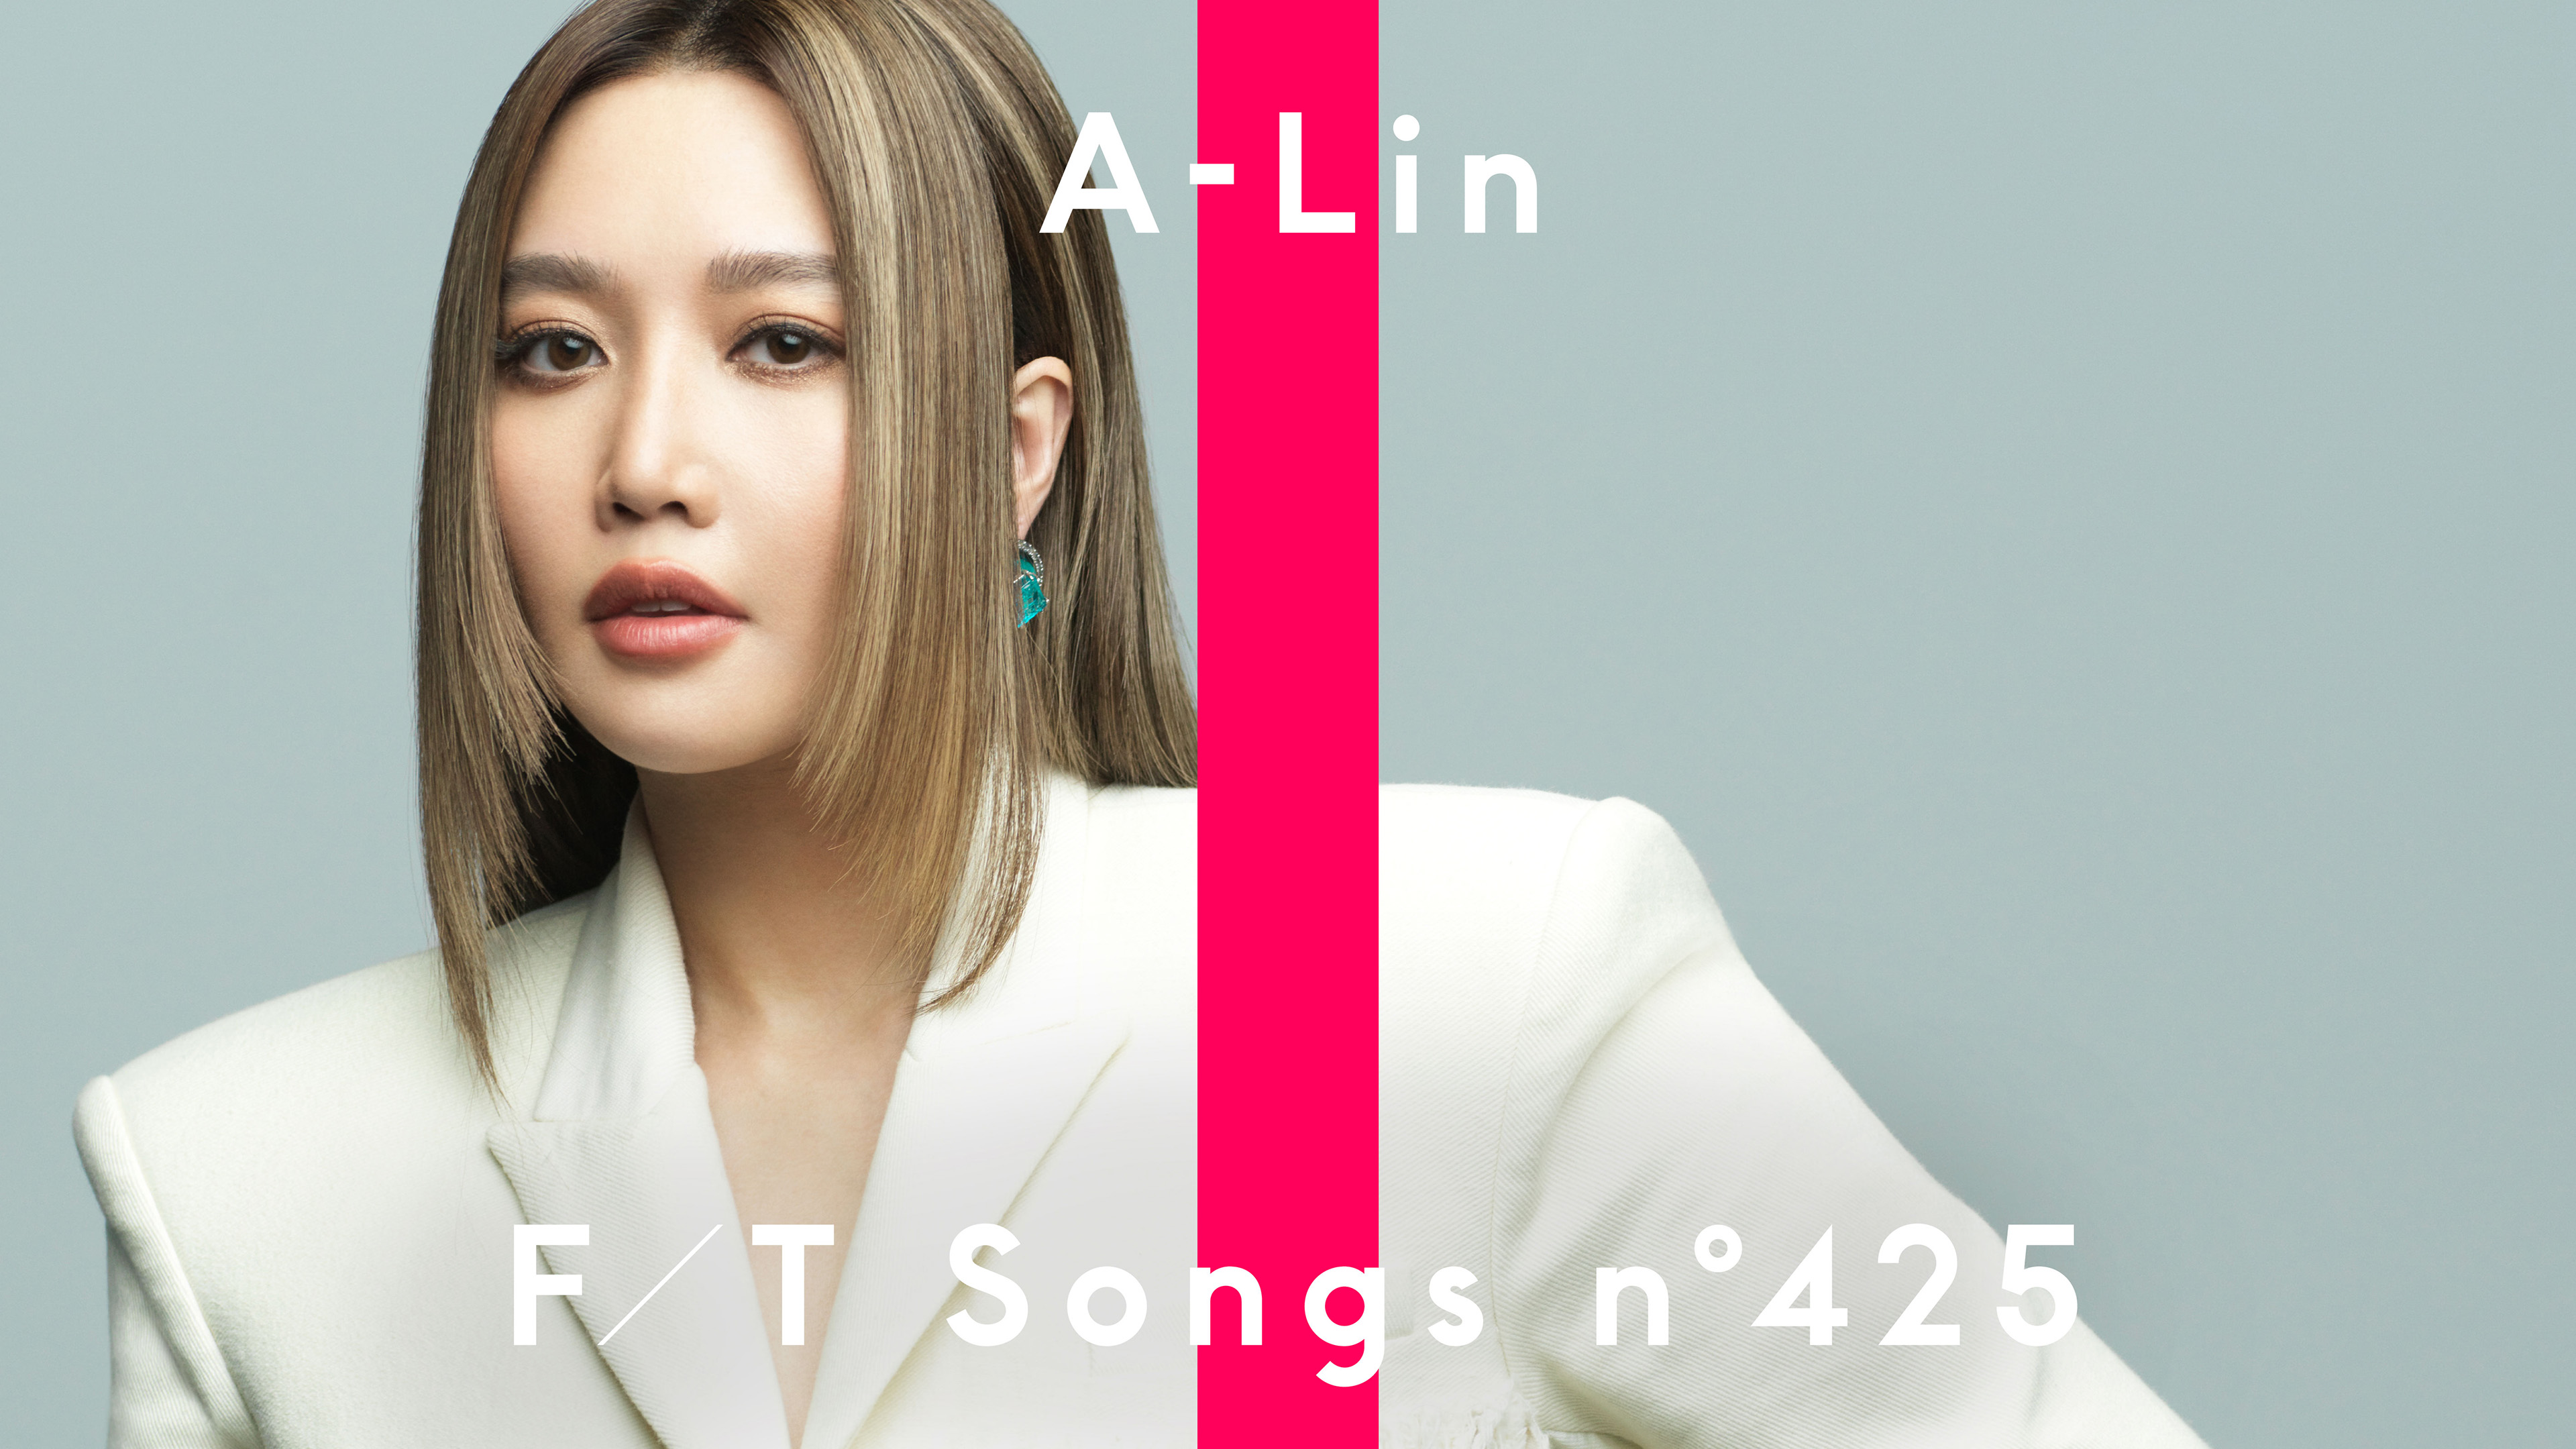 去年獲金曲獎最佳女歌手的A-Lin，登上有950萬訂閱數的知名音樂頻道「THE FIRST TAKE」演出。圖/THE FIRST TAKE提供